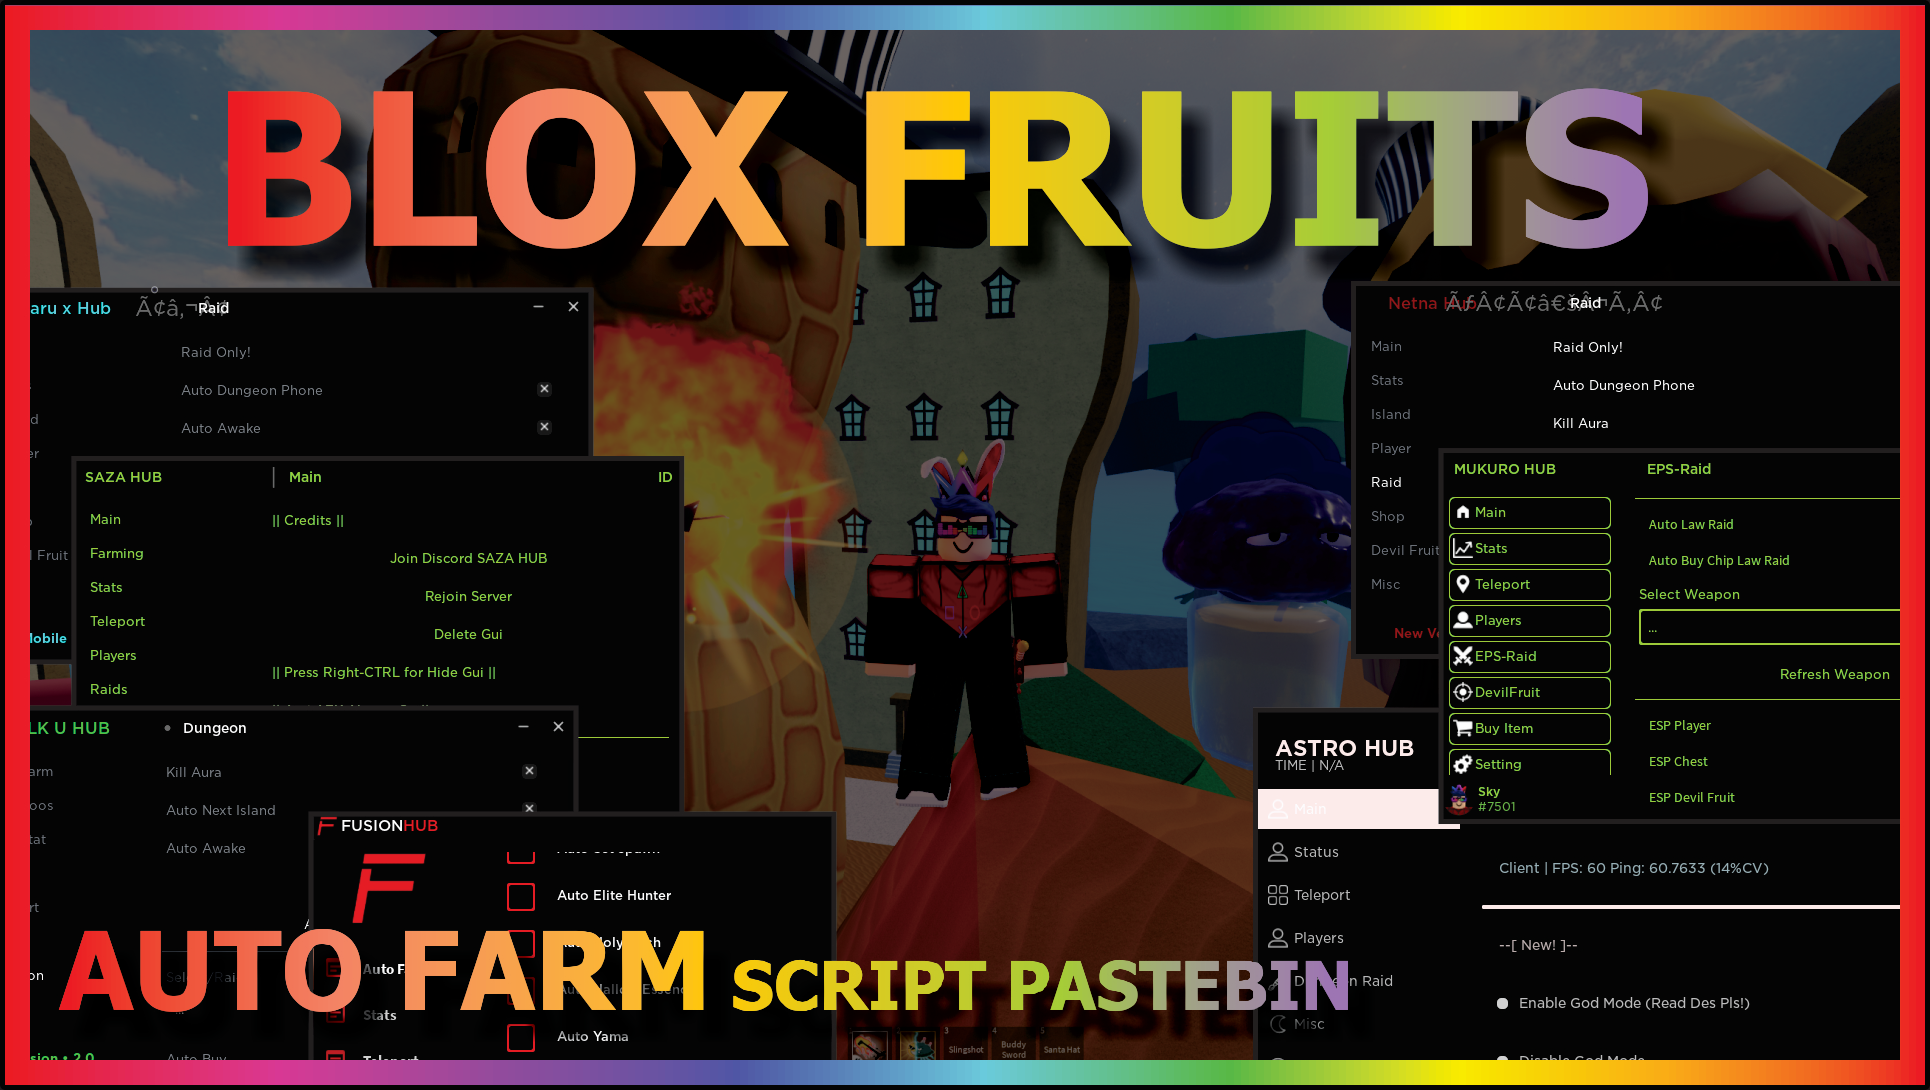 UPDATED] ROBLOX, Blox Fruits Script Hack / GUI